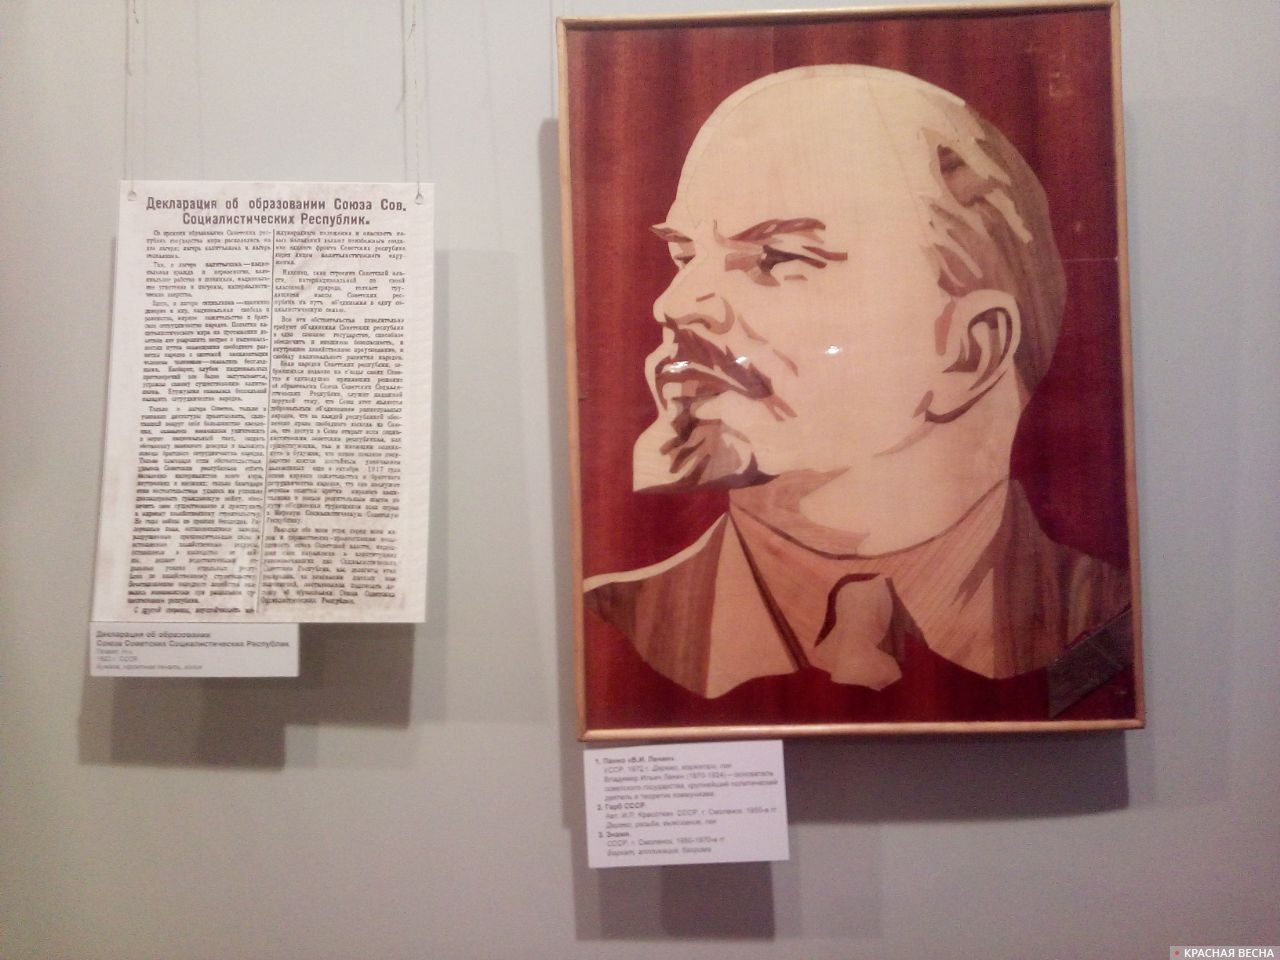 Владимир Ильич Ленин (1870-1924) - основатель советского государства, крупнейший политический деятель и теоретик коммунизма. 1972г.